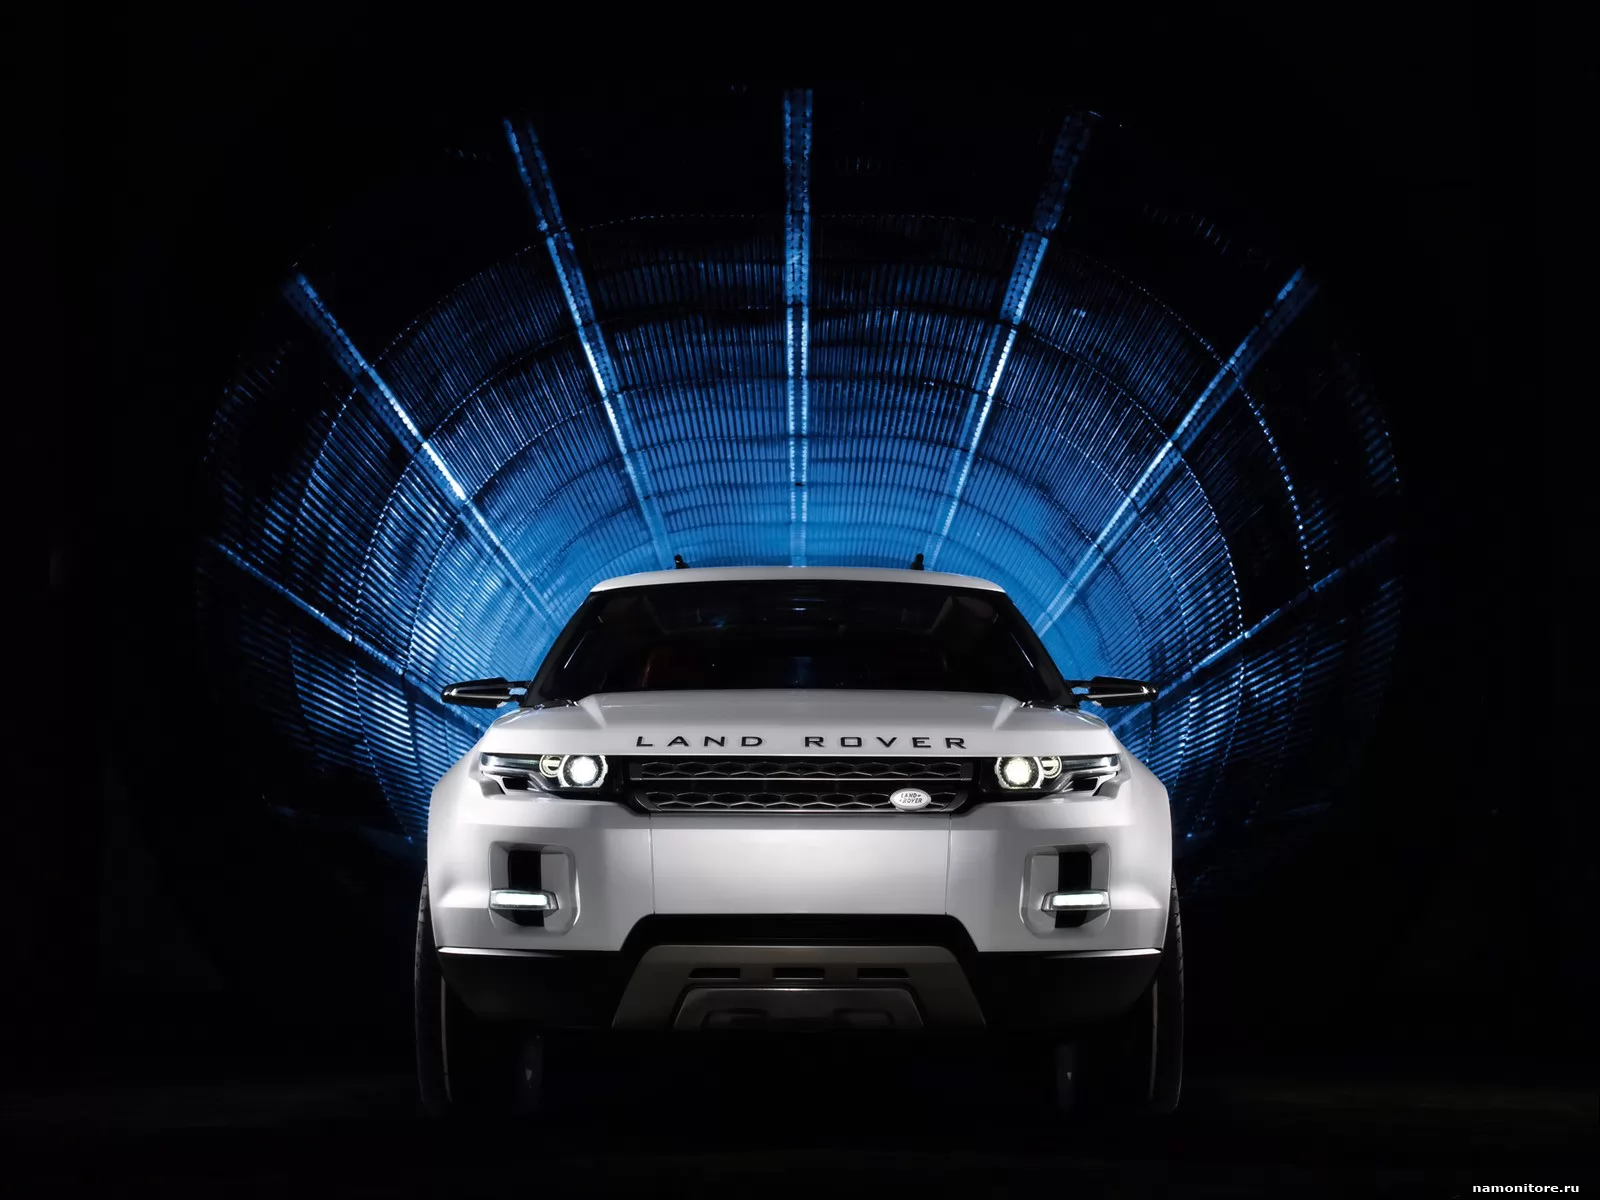 Land Rover LRX Concept, Land Rover, , , , , ,  